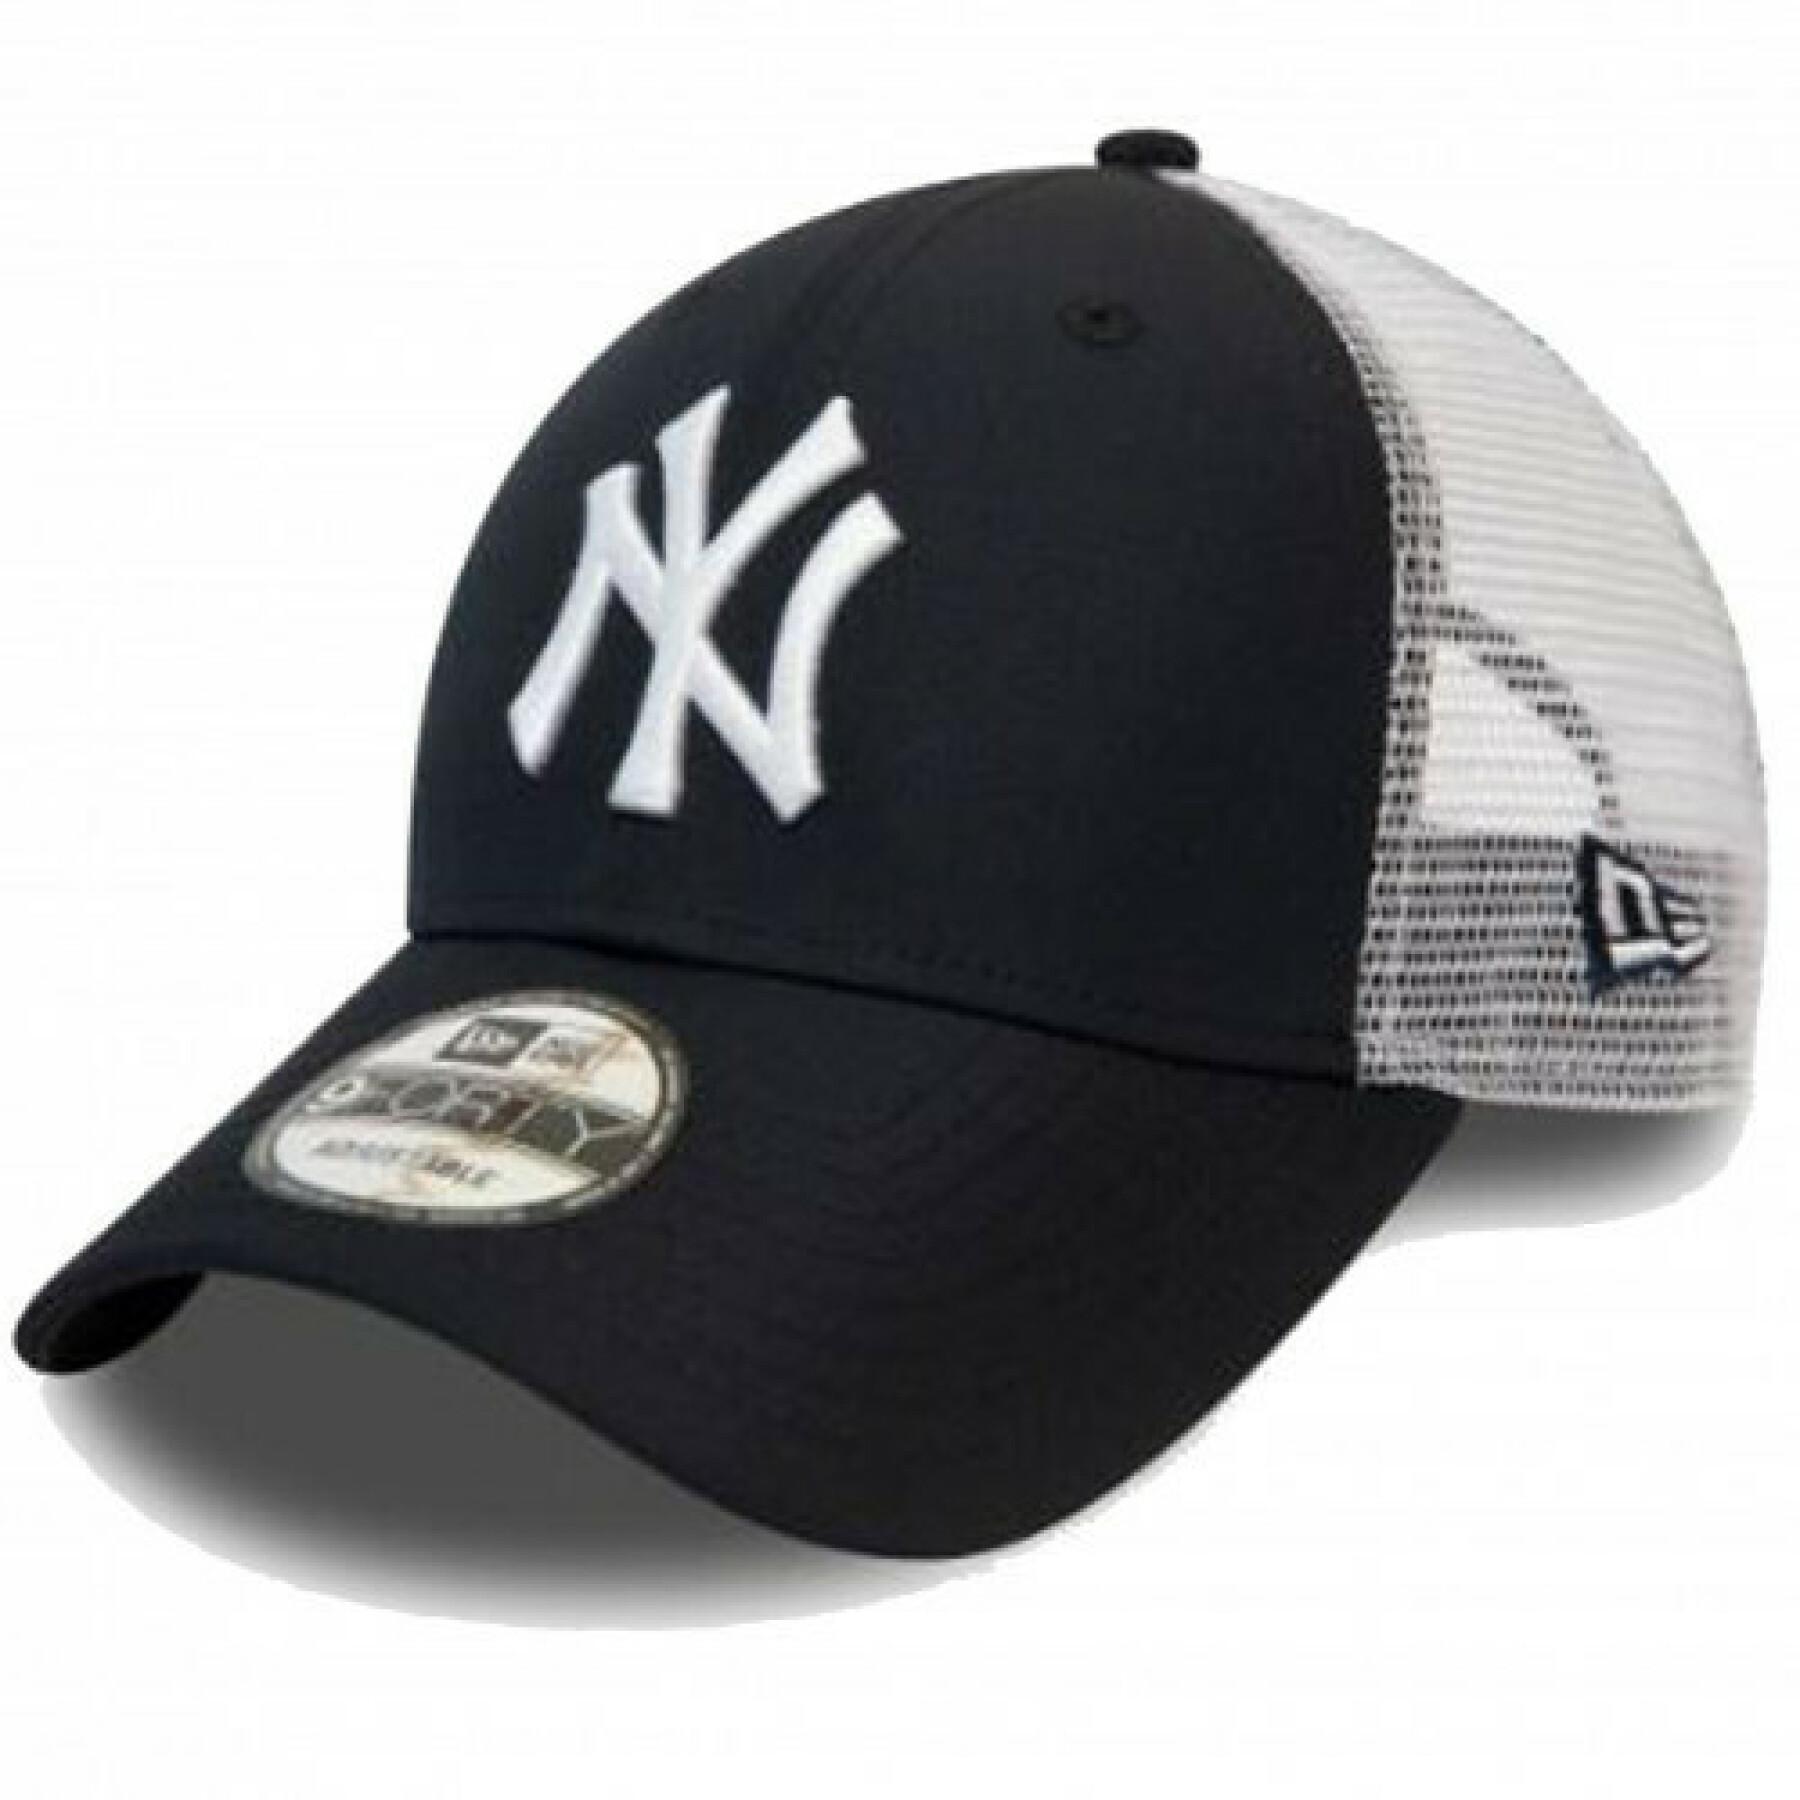 Cap New Era 940 New York Yankees Summer League OTC